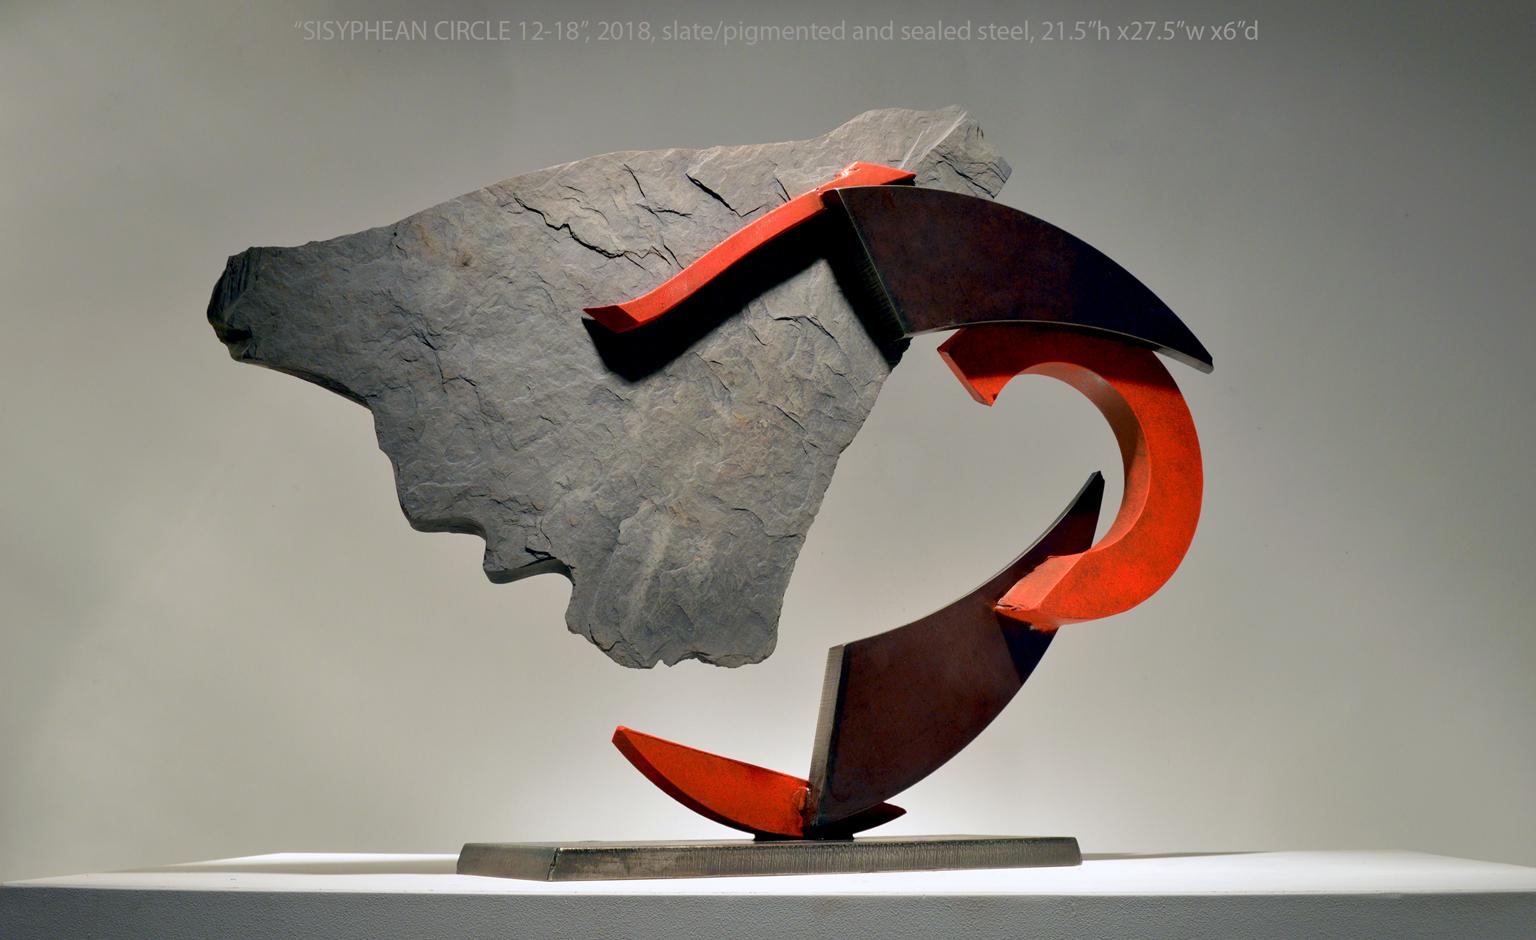 SISYPHEAN CIRCLE 12-18, Schiefer, Stahl, abstrakte industrielle Skulptur, Metall, Stein (Abstrakt), Sculpture, von John Van Alstine